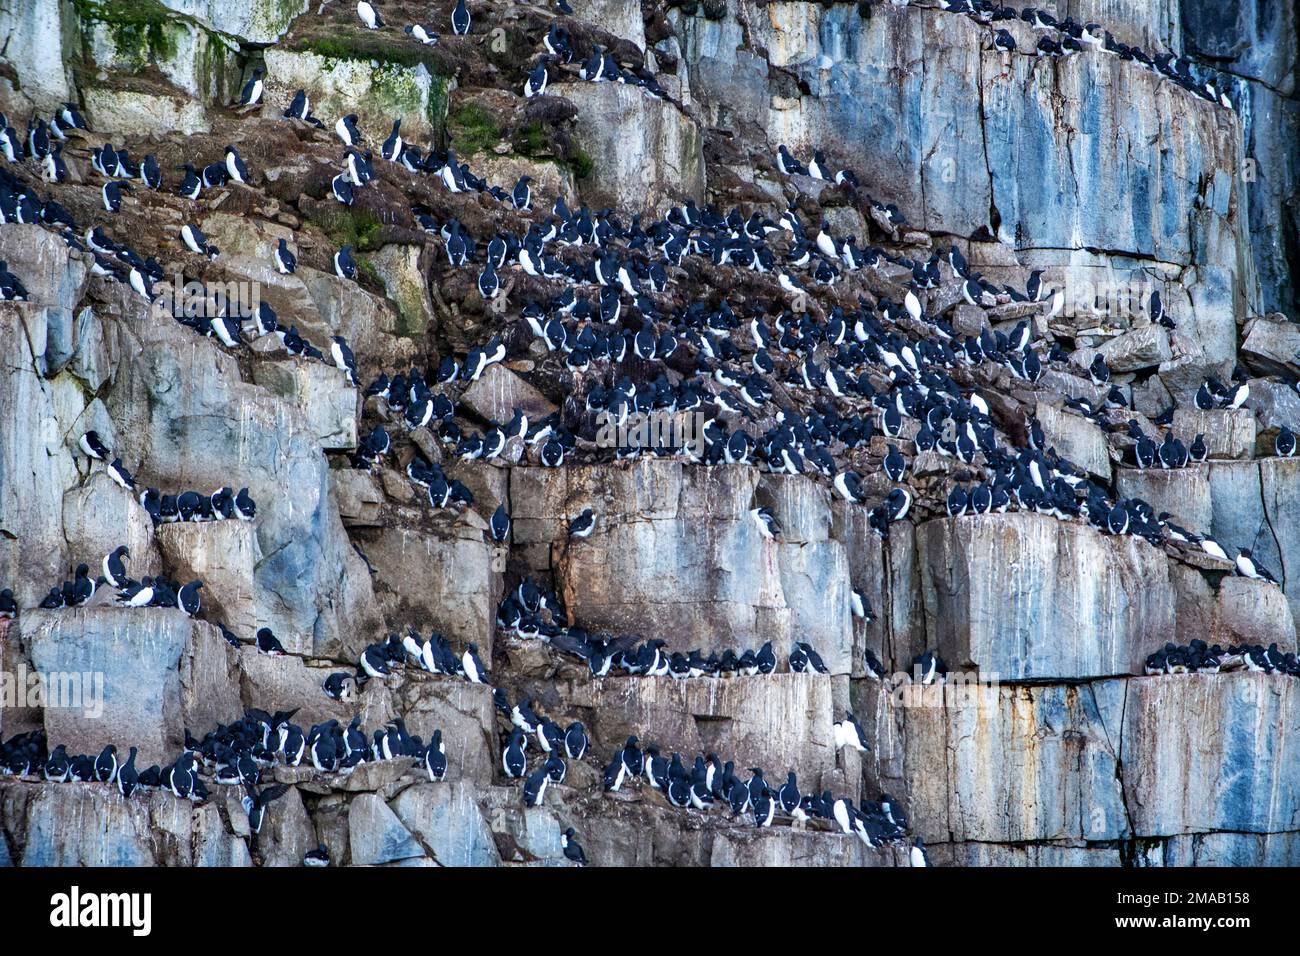 Colonie de nidification de Brunnich guillemot (Uria lomvia), falaise d'Alkefjellet, Svalbard, Norvège. Expédition bateau de croisière Greg Mortimer dans l'archipel de Svalbard Banque D'Images